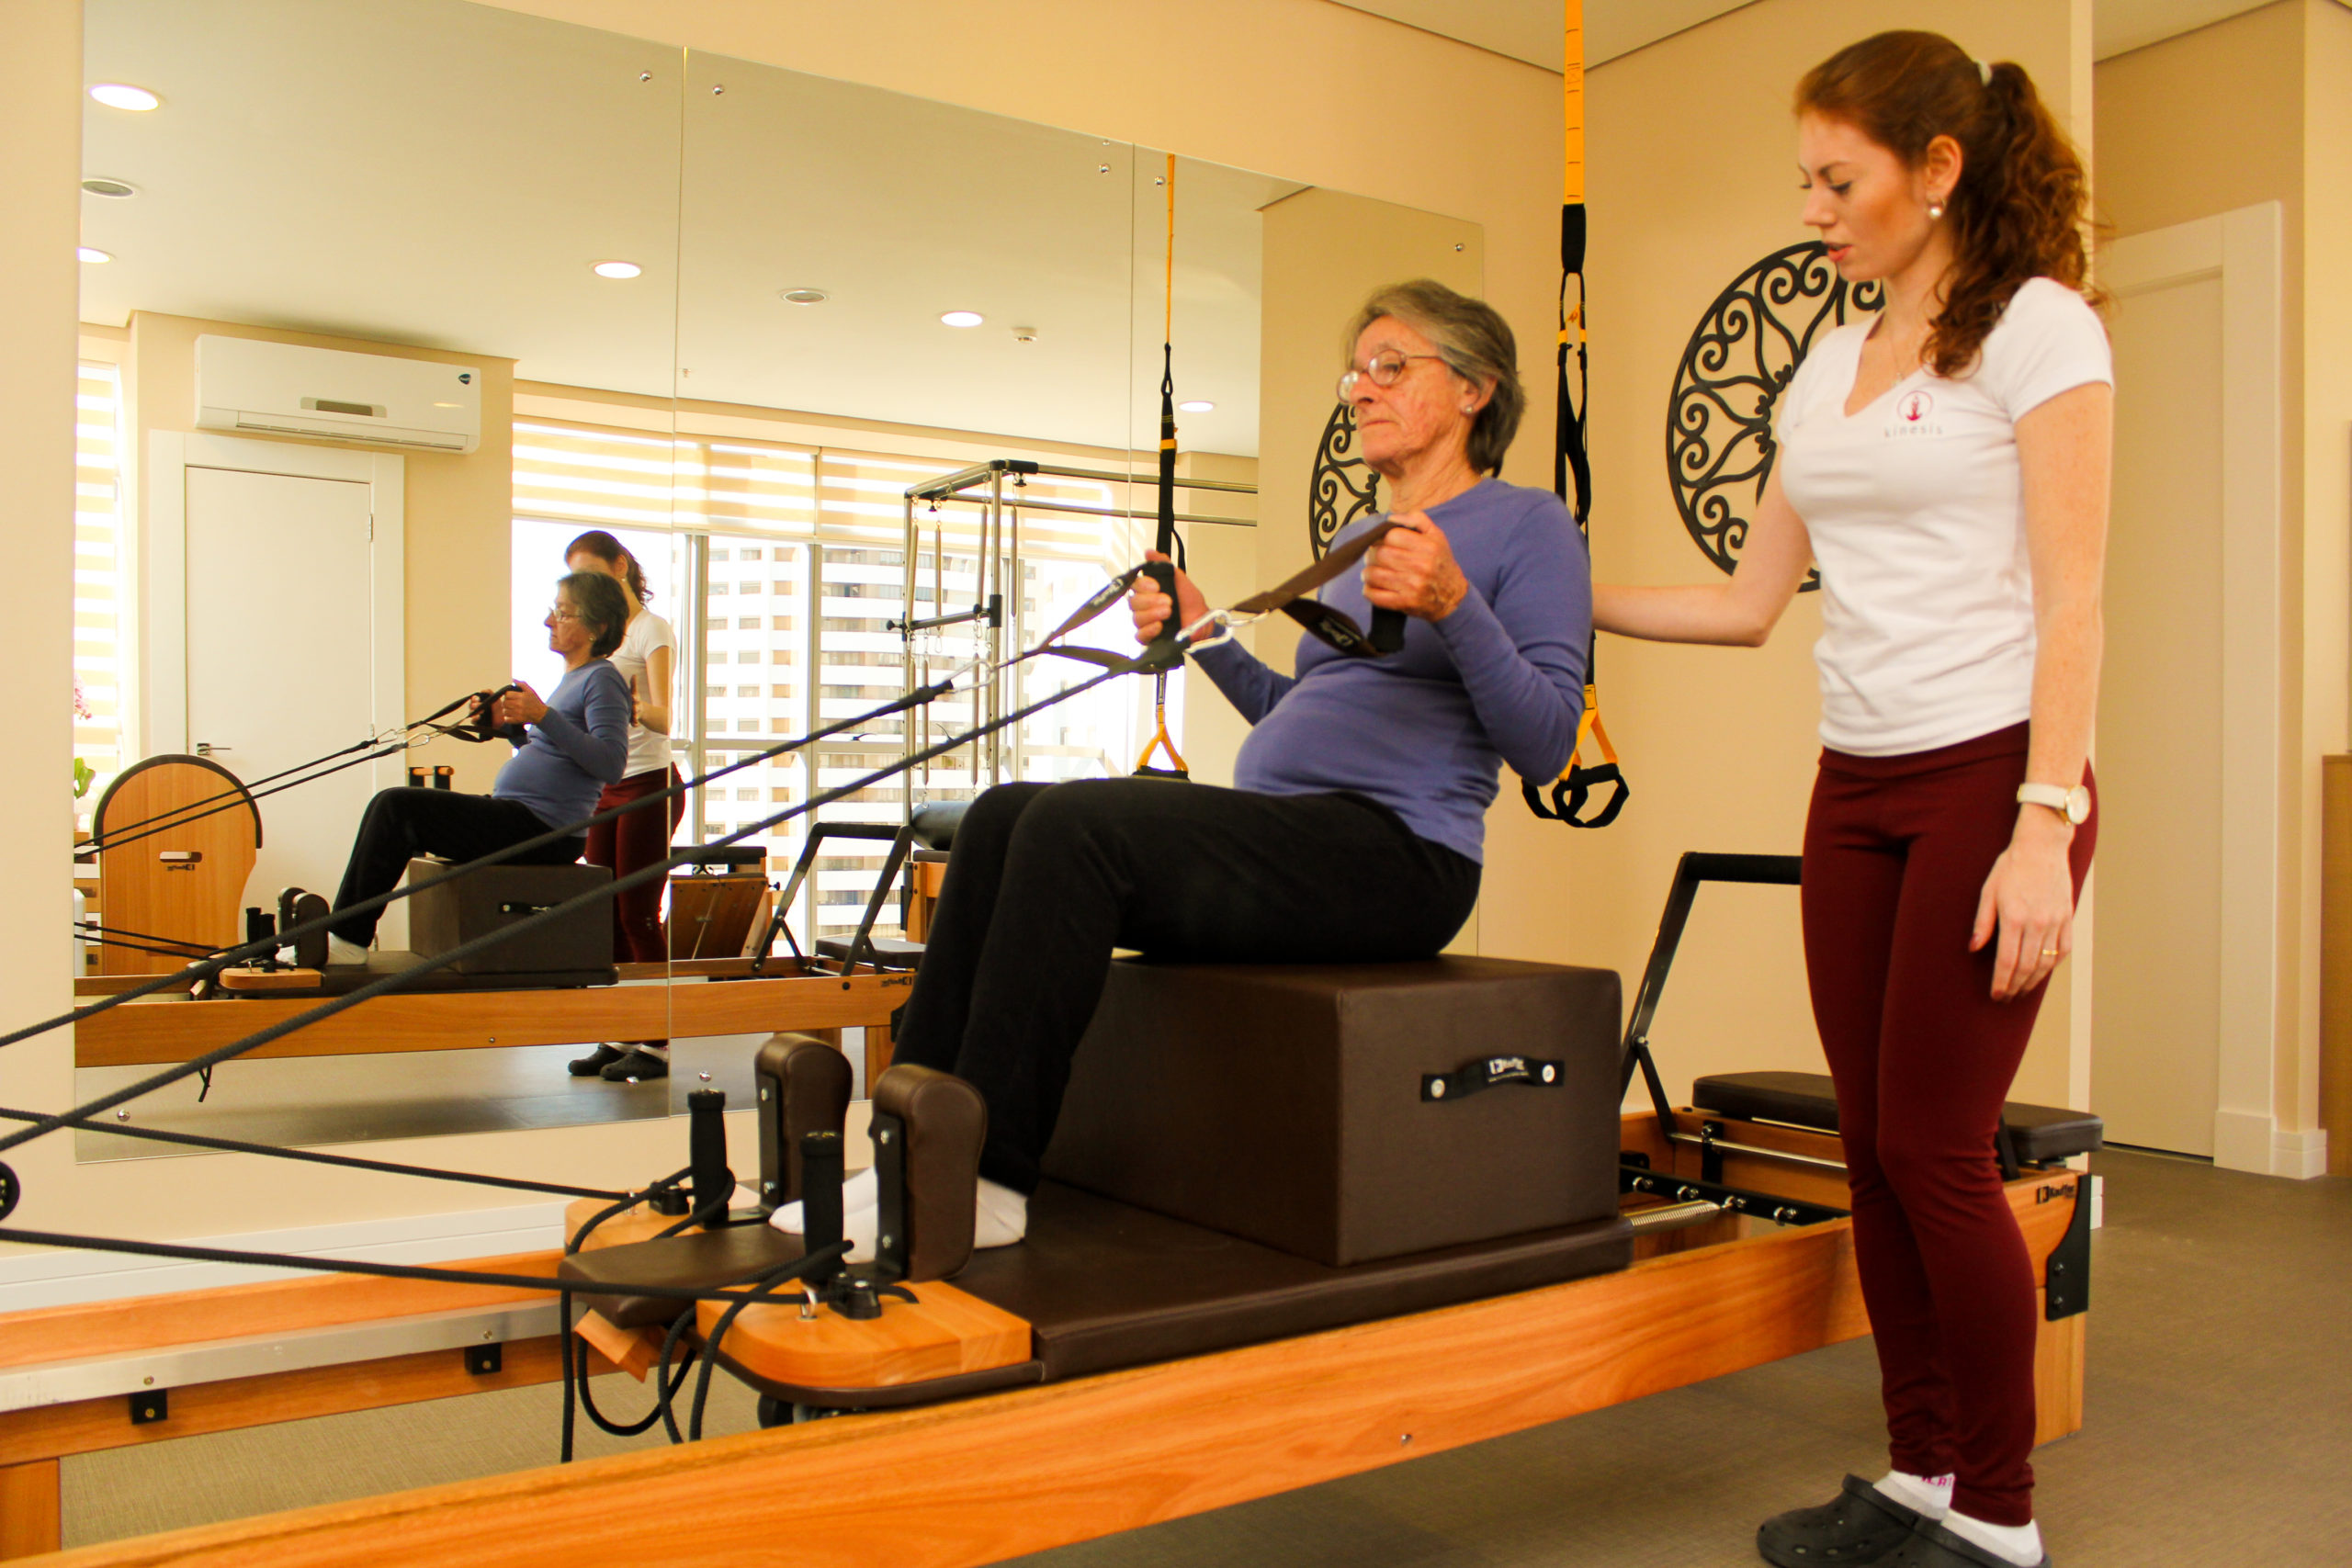 Aulas de pilates solo garantem melhora da força e flexibilidade